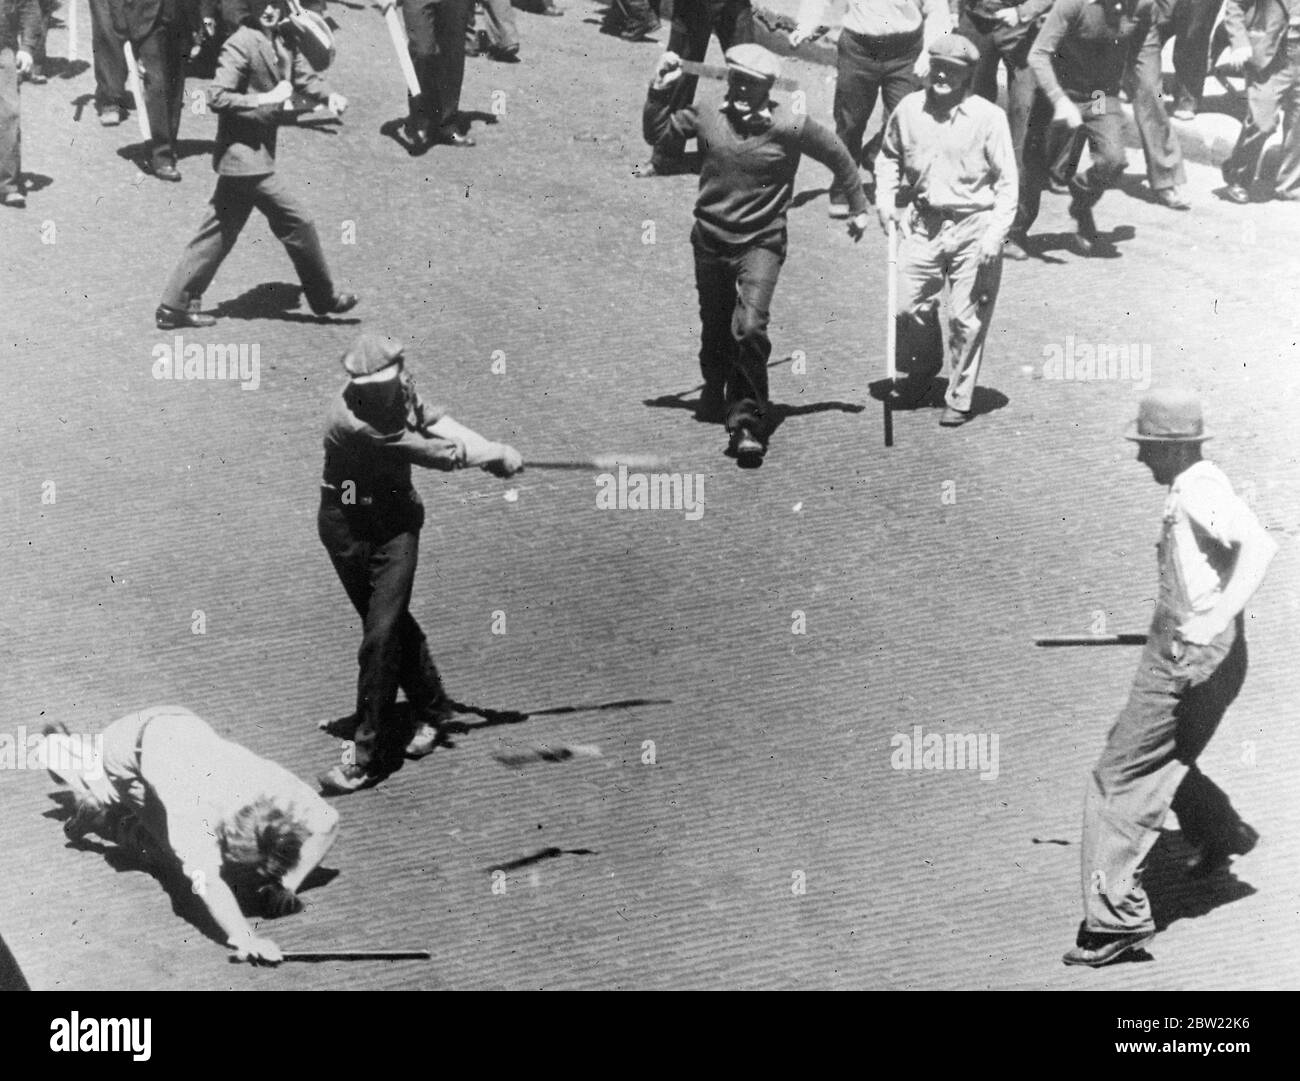 Mann im Moment, als er von einem Stürmer geschlagen wurde - der Mann war innerhalb von Minuten tot. 13. September 1937[?] Stockfoto